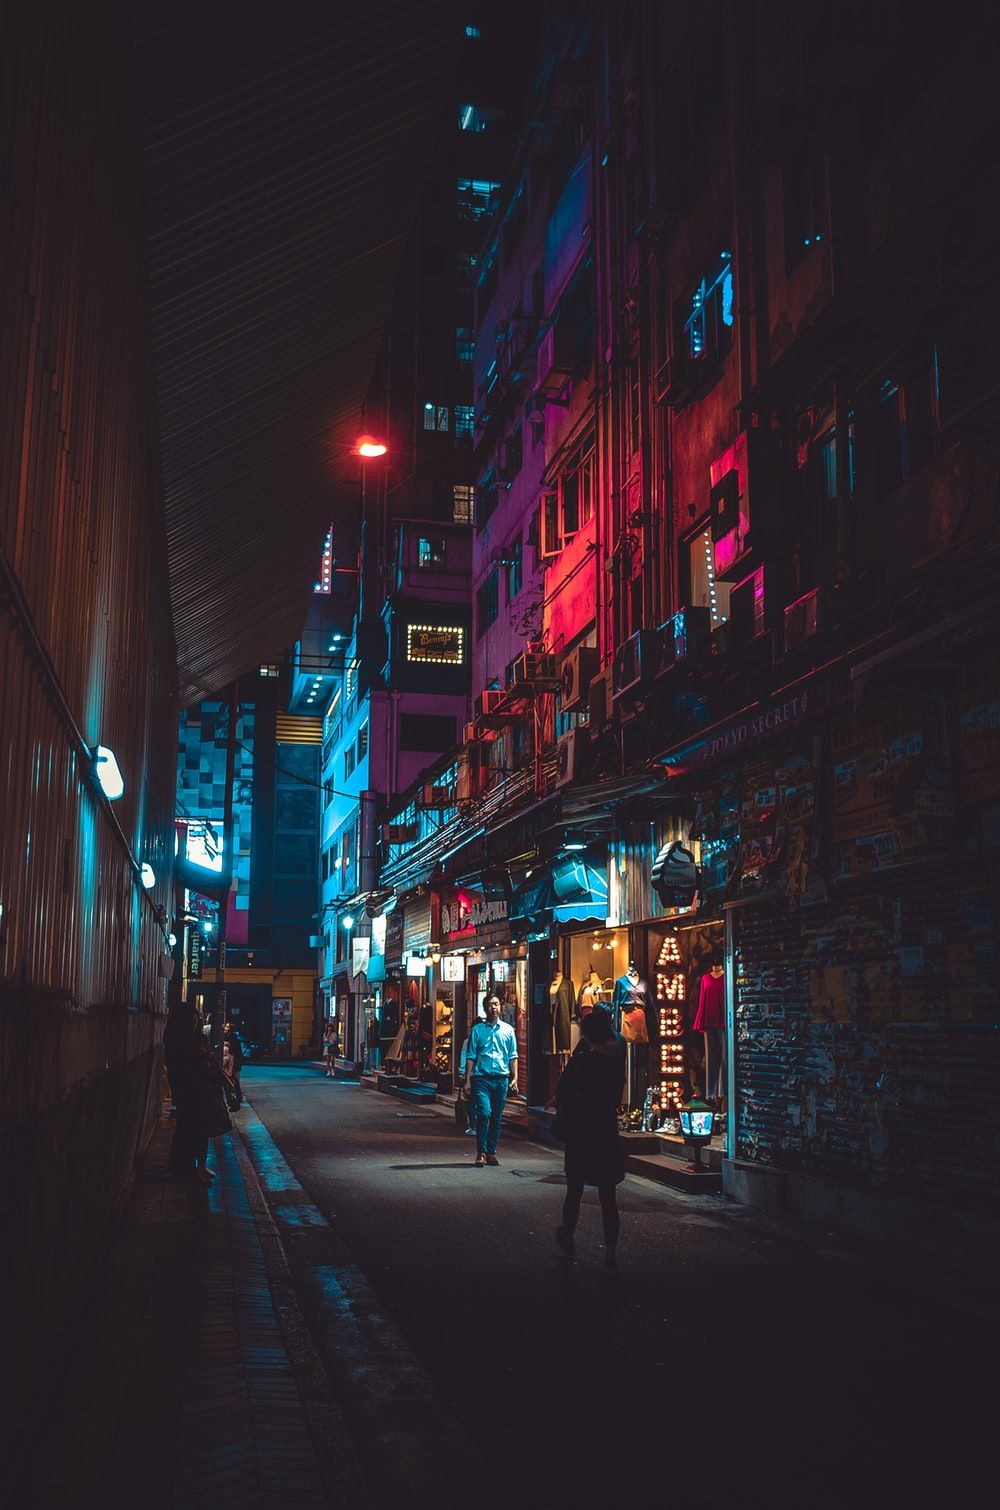 Hong Kong At Night Wallpapers